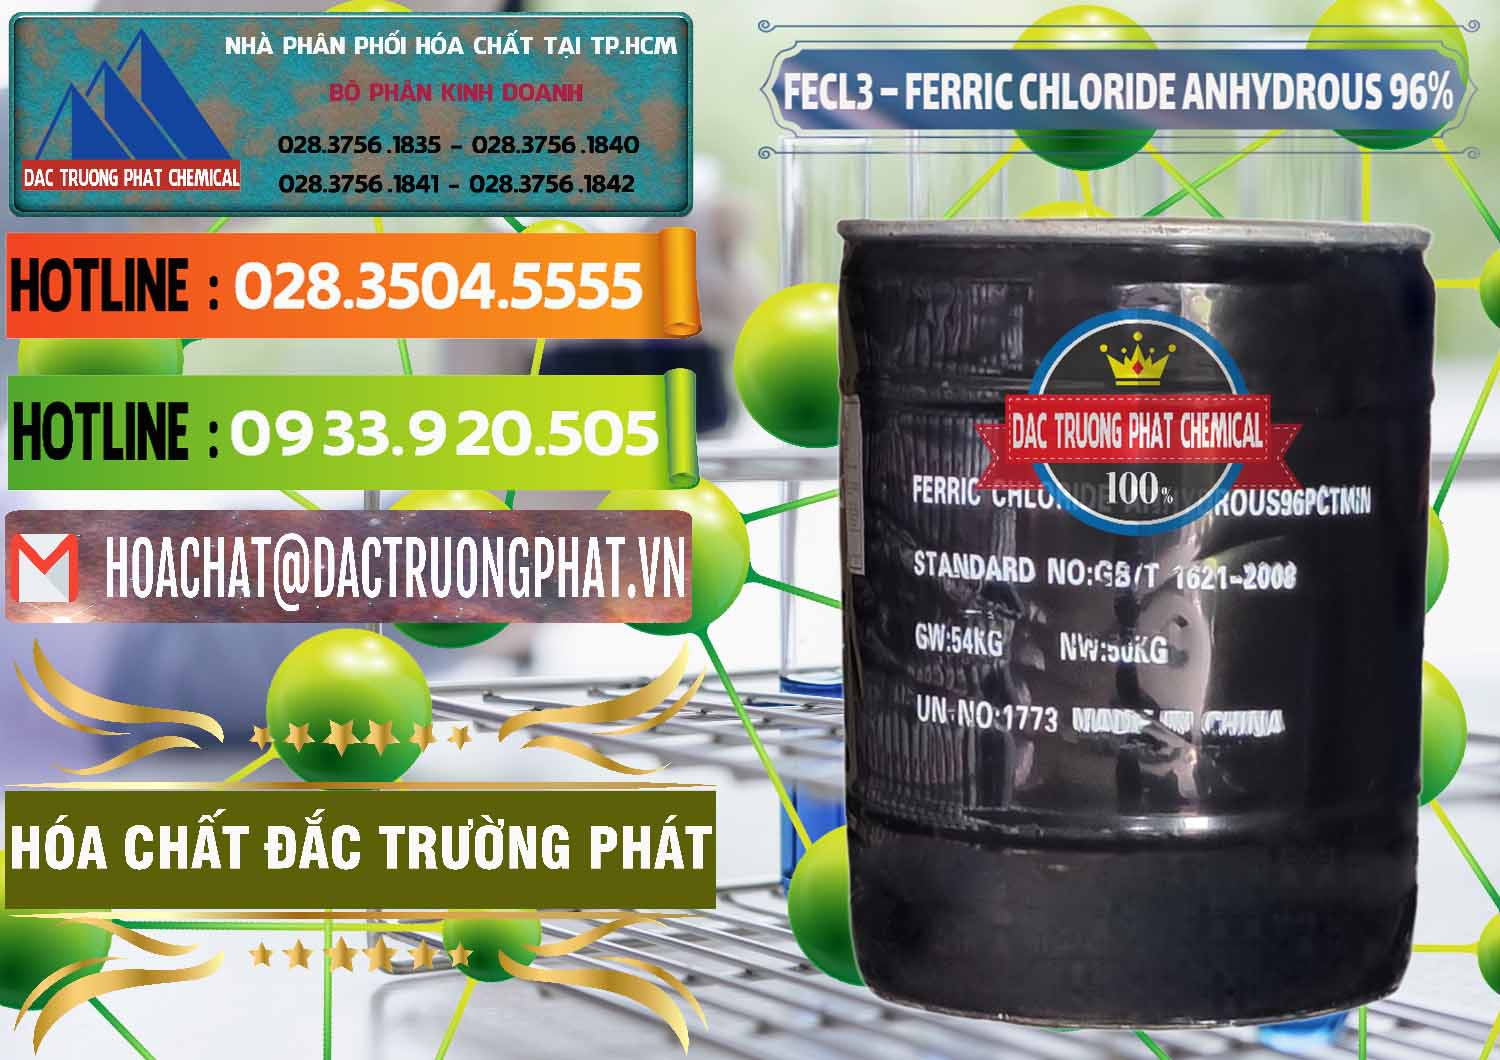 Công ty chuyên cung cấp - bán FECL3 – Ferric Chloride Anhydrous 96% Trung Quốc China - 0065 - Nơi chuyên bán & cung cấp hóa chất tại TP.HCM - cungcaphoachat.com.vn